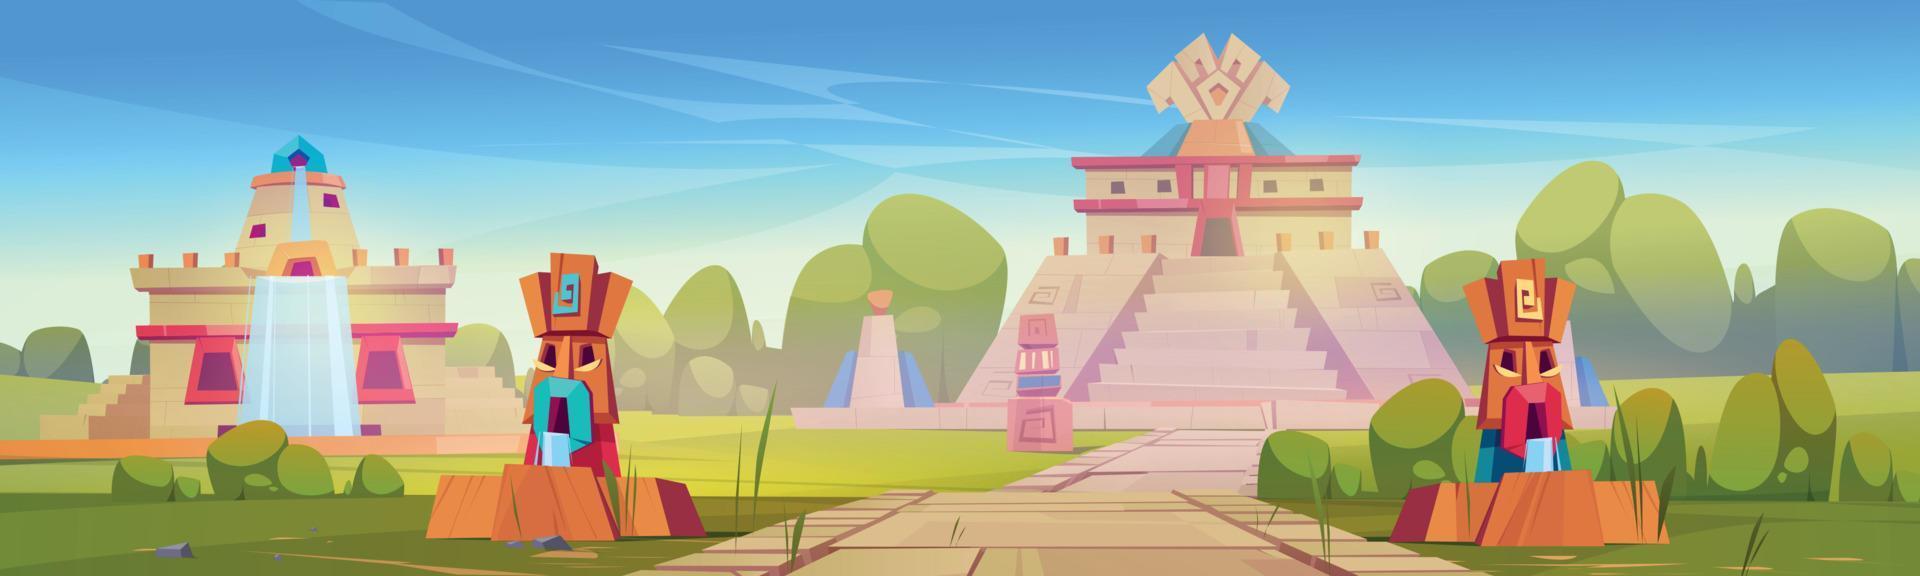 ville aztèque avec pyramide et statues monument maya vecteur